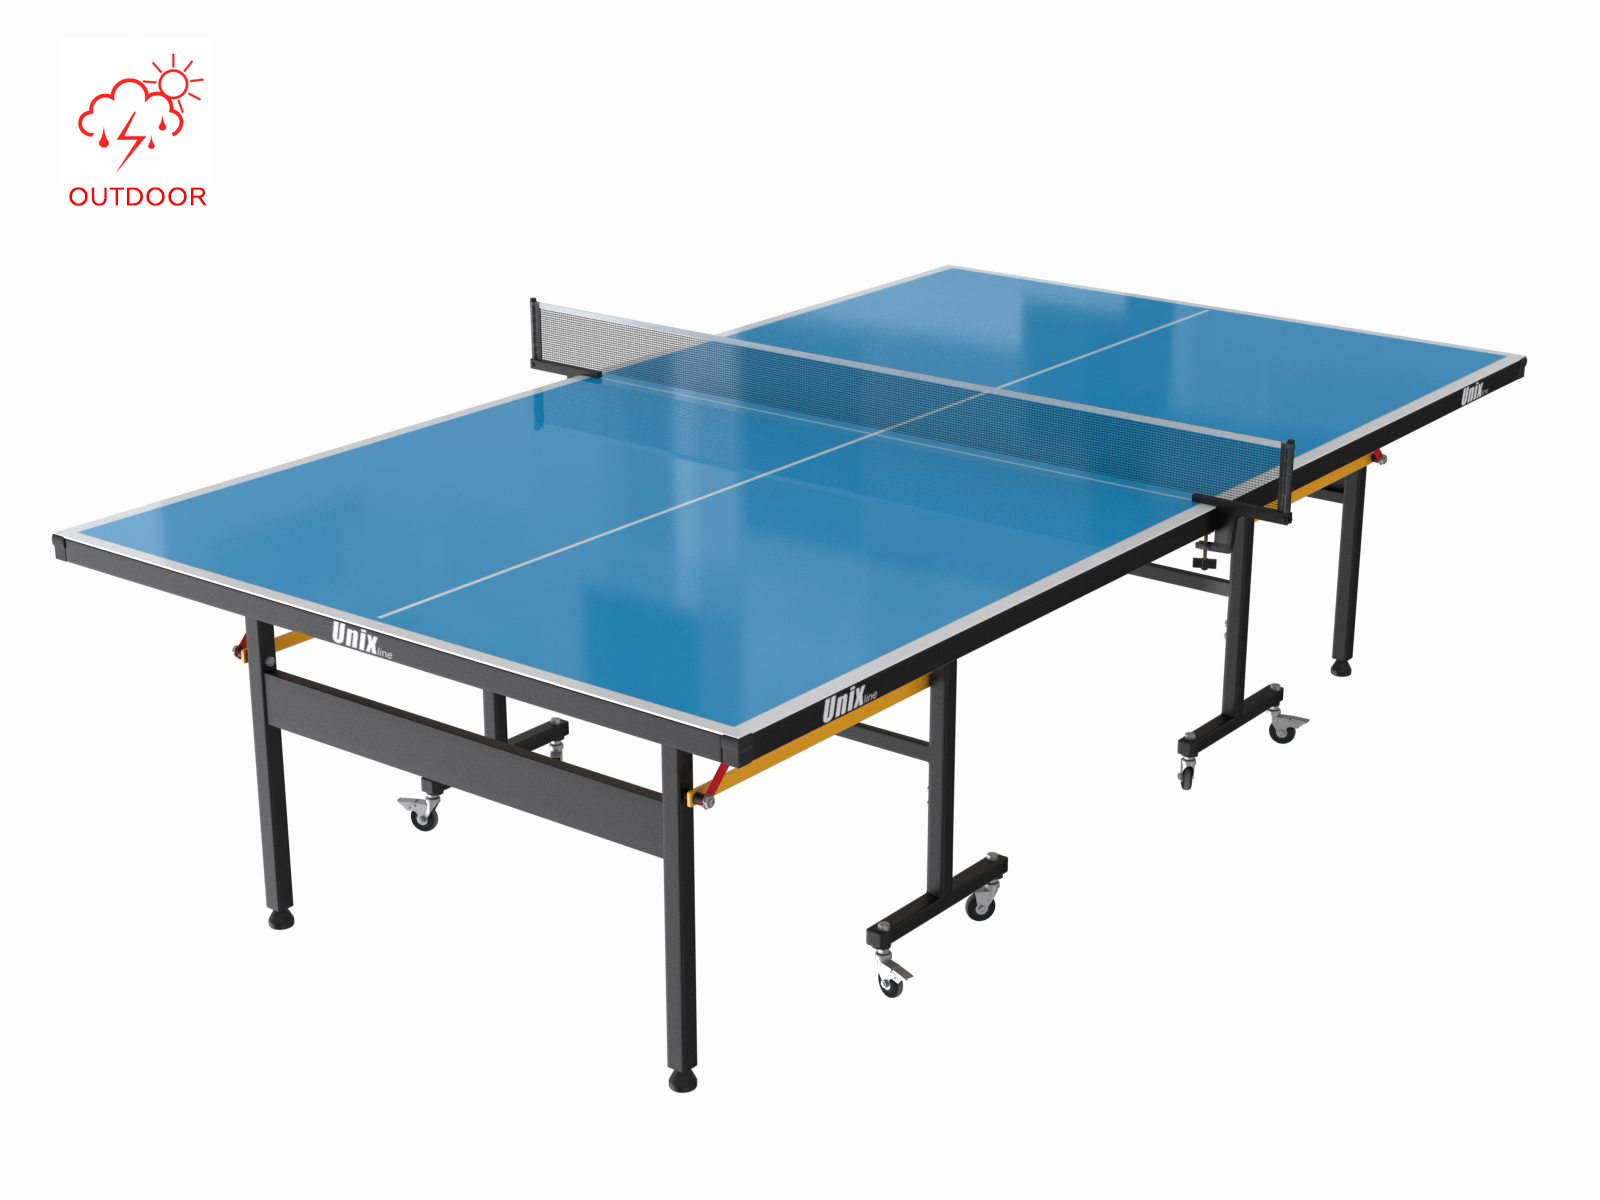 Всепогодный теннисный стол UNIX Line outdoor 6mm (blue) - 1 